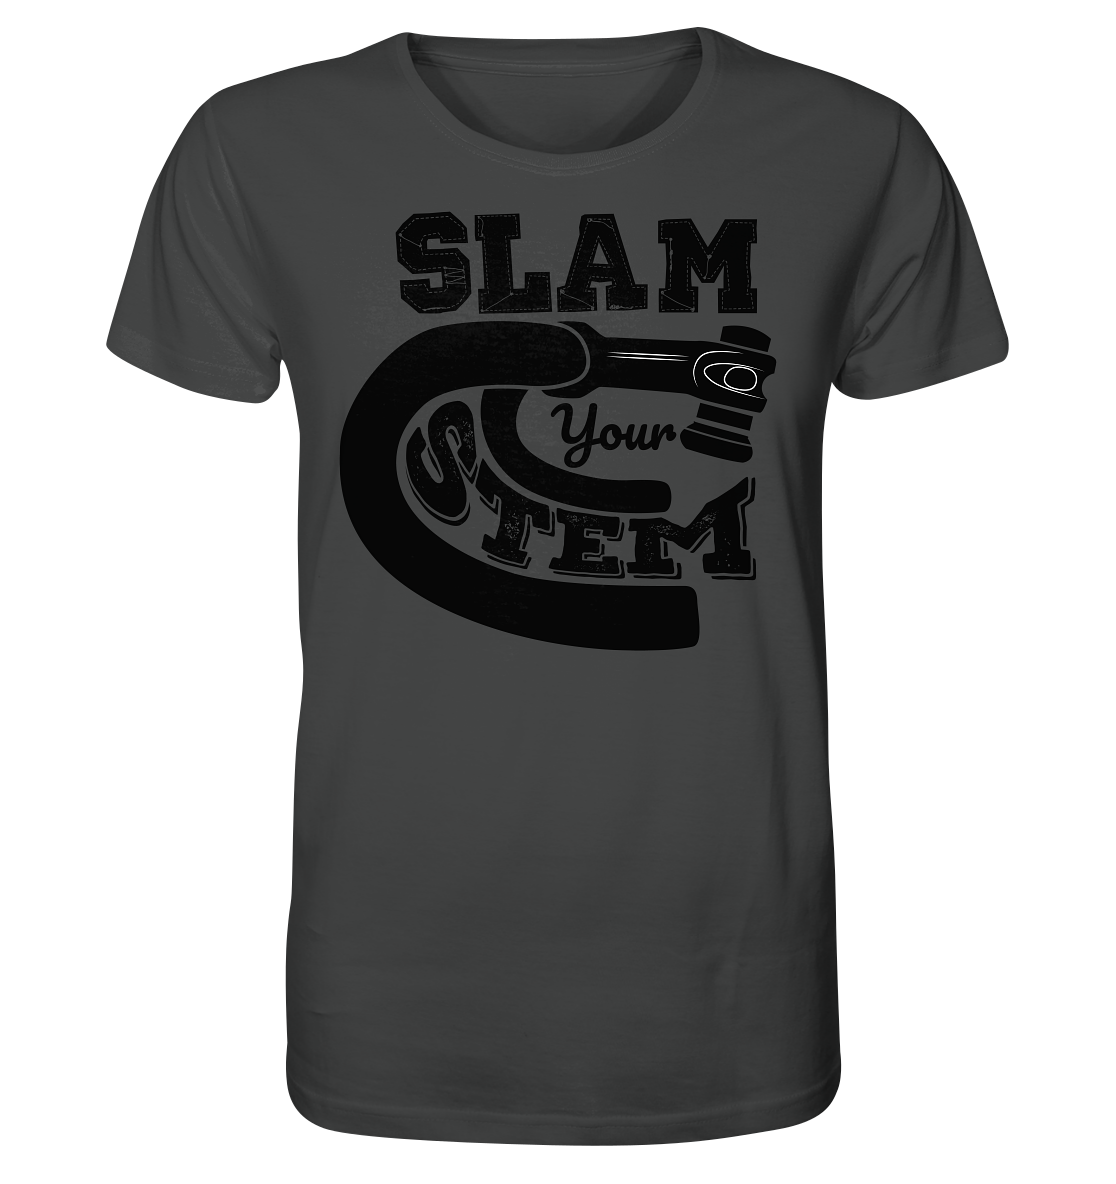 Slam your Stem - Organic Shirt